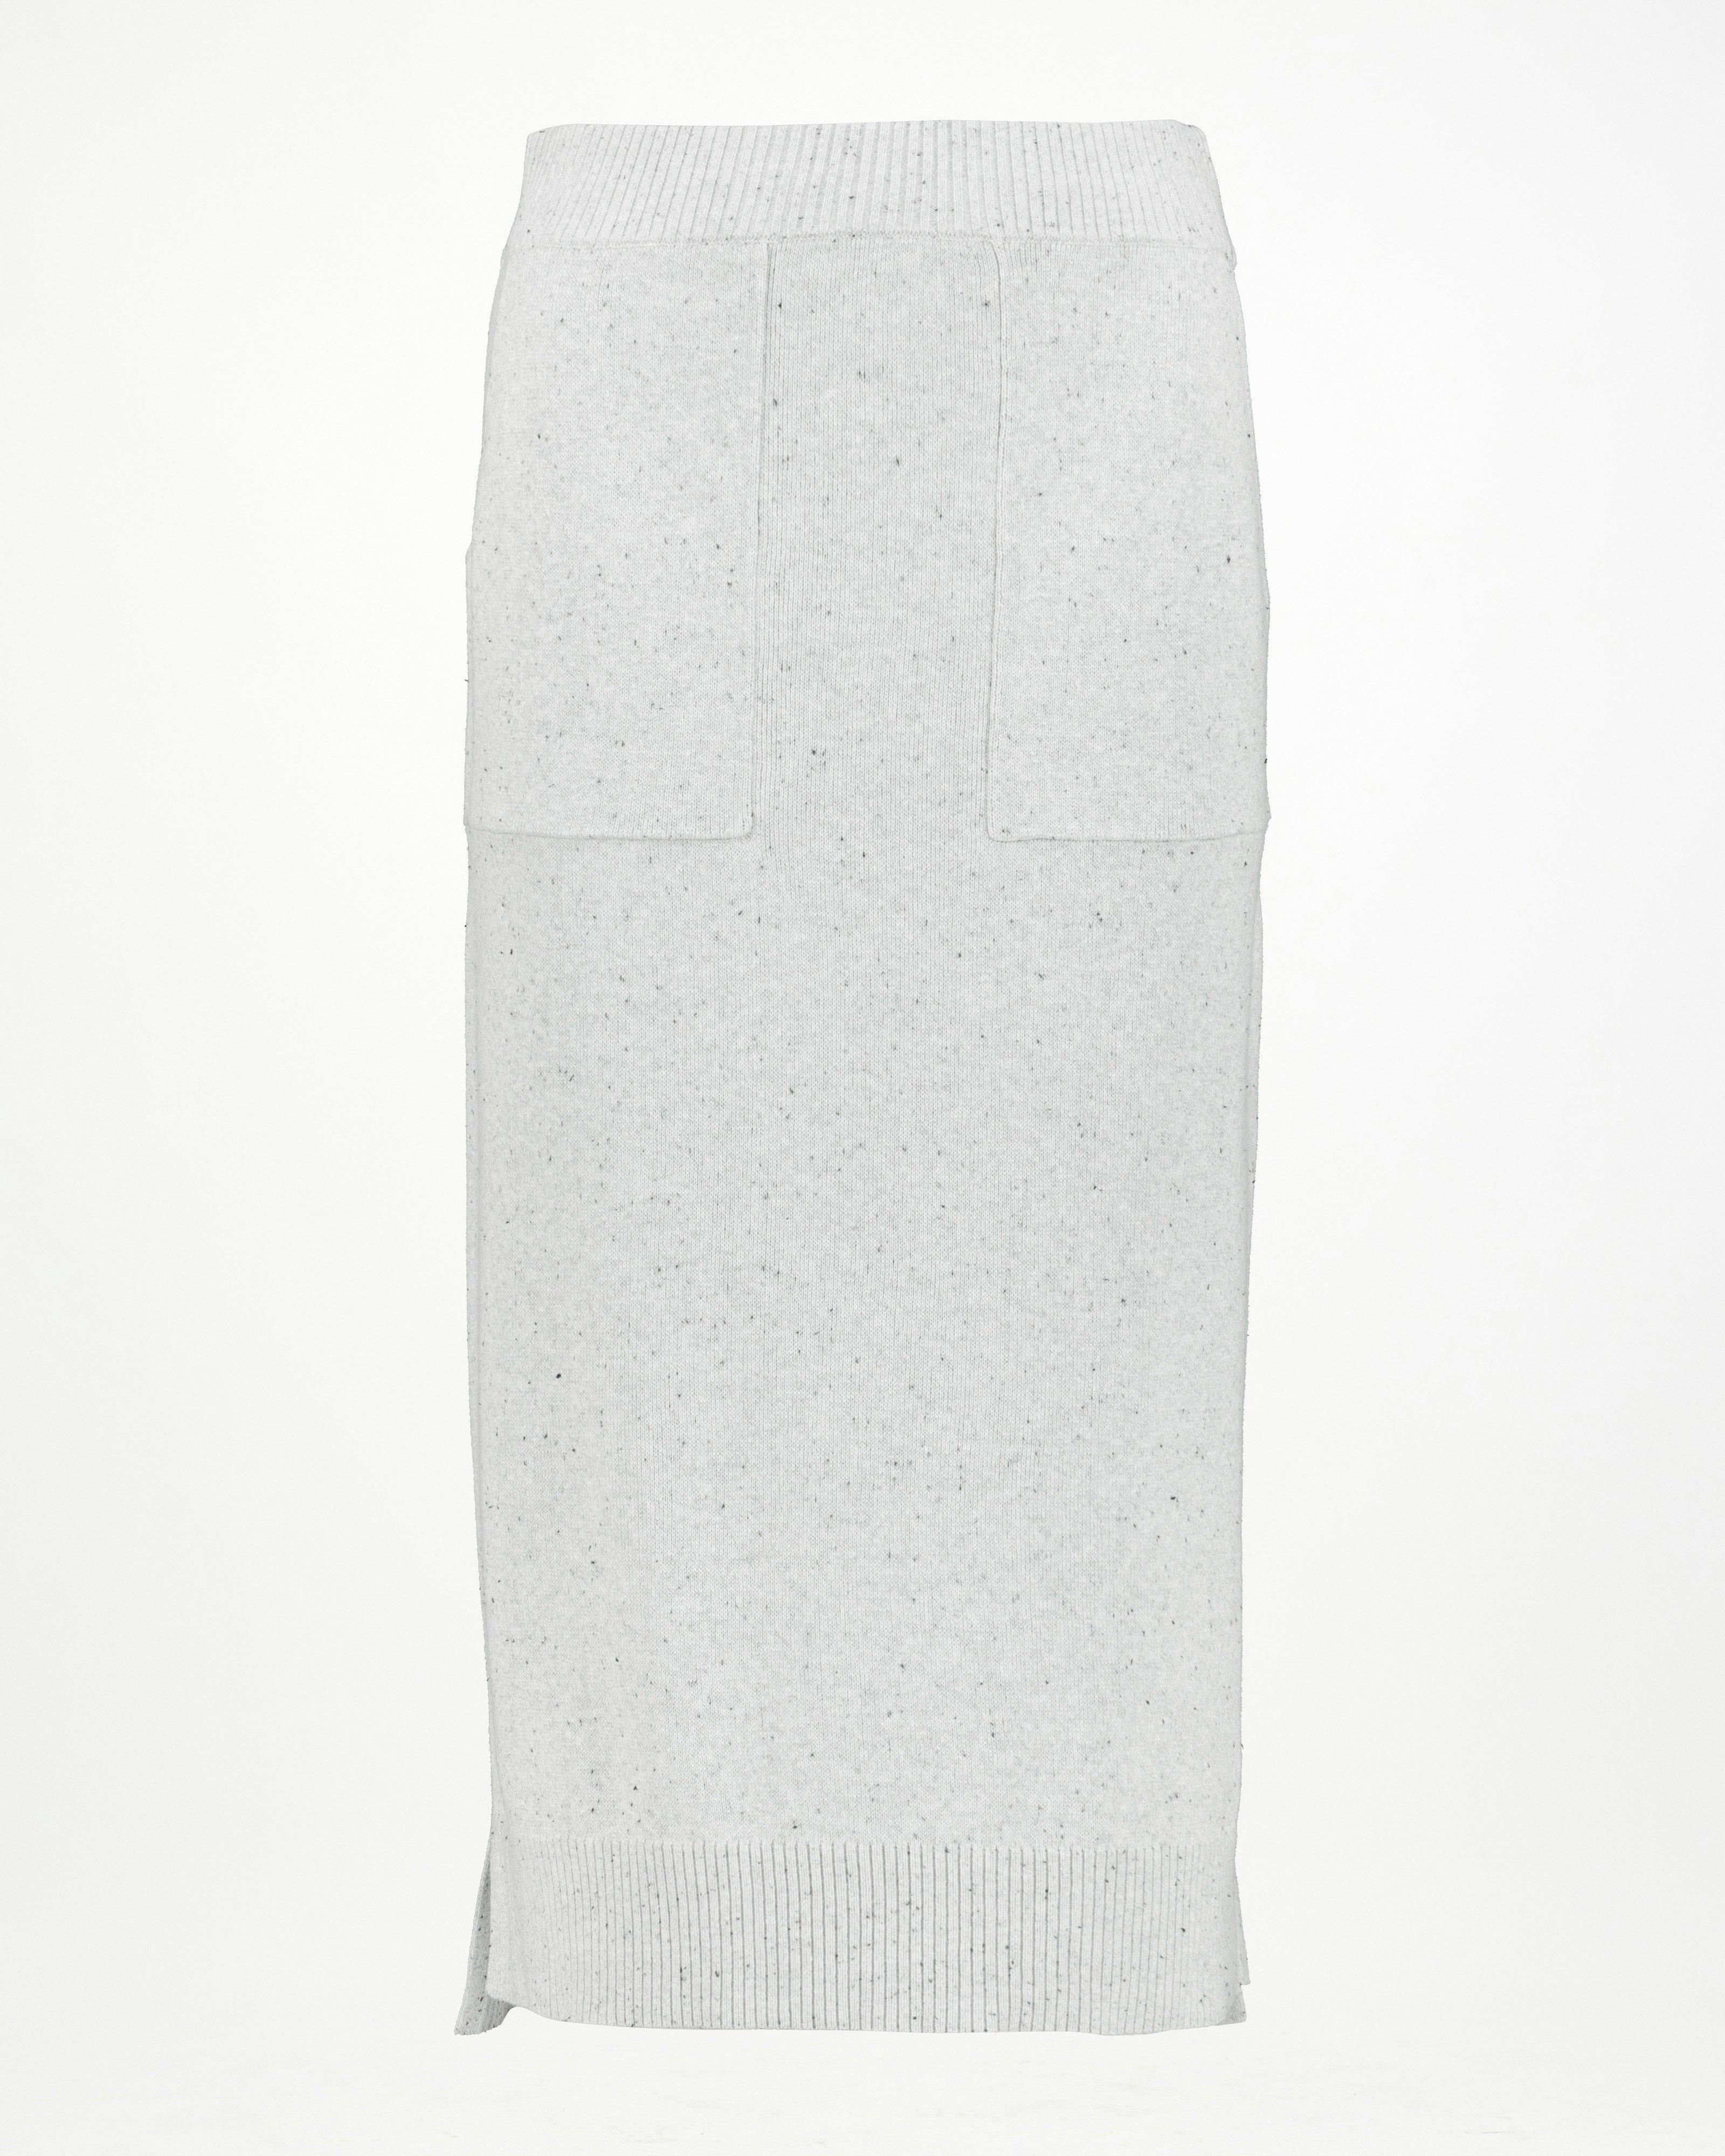 Natalie Knitwear Skirt -  Light Grey